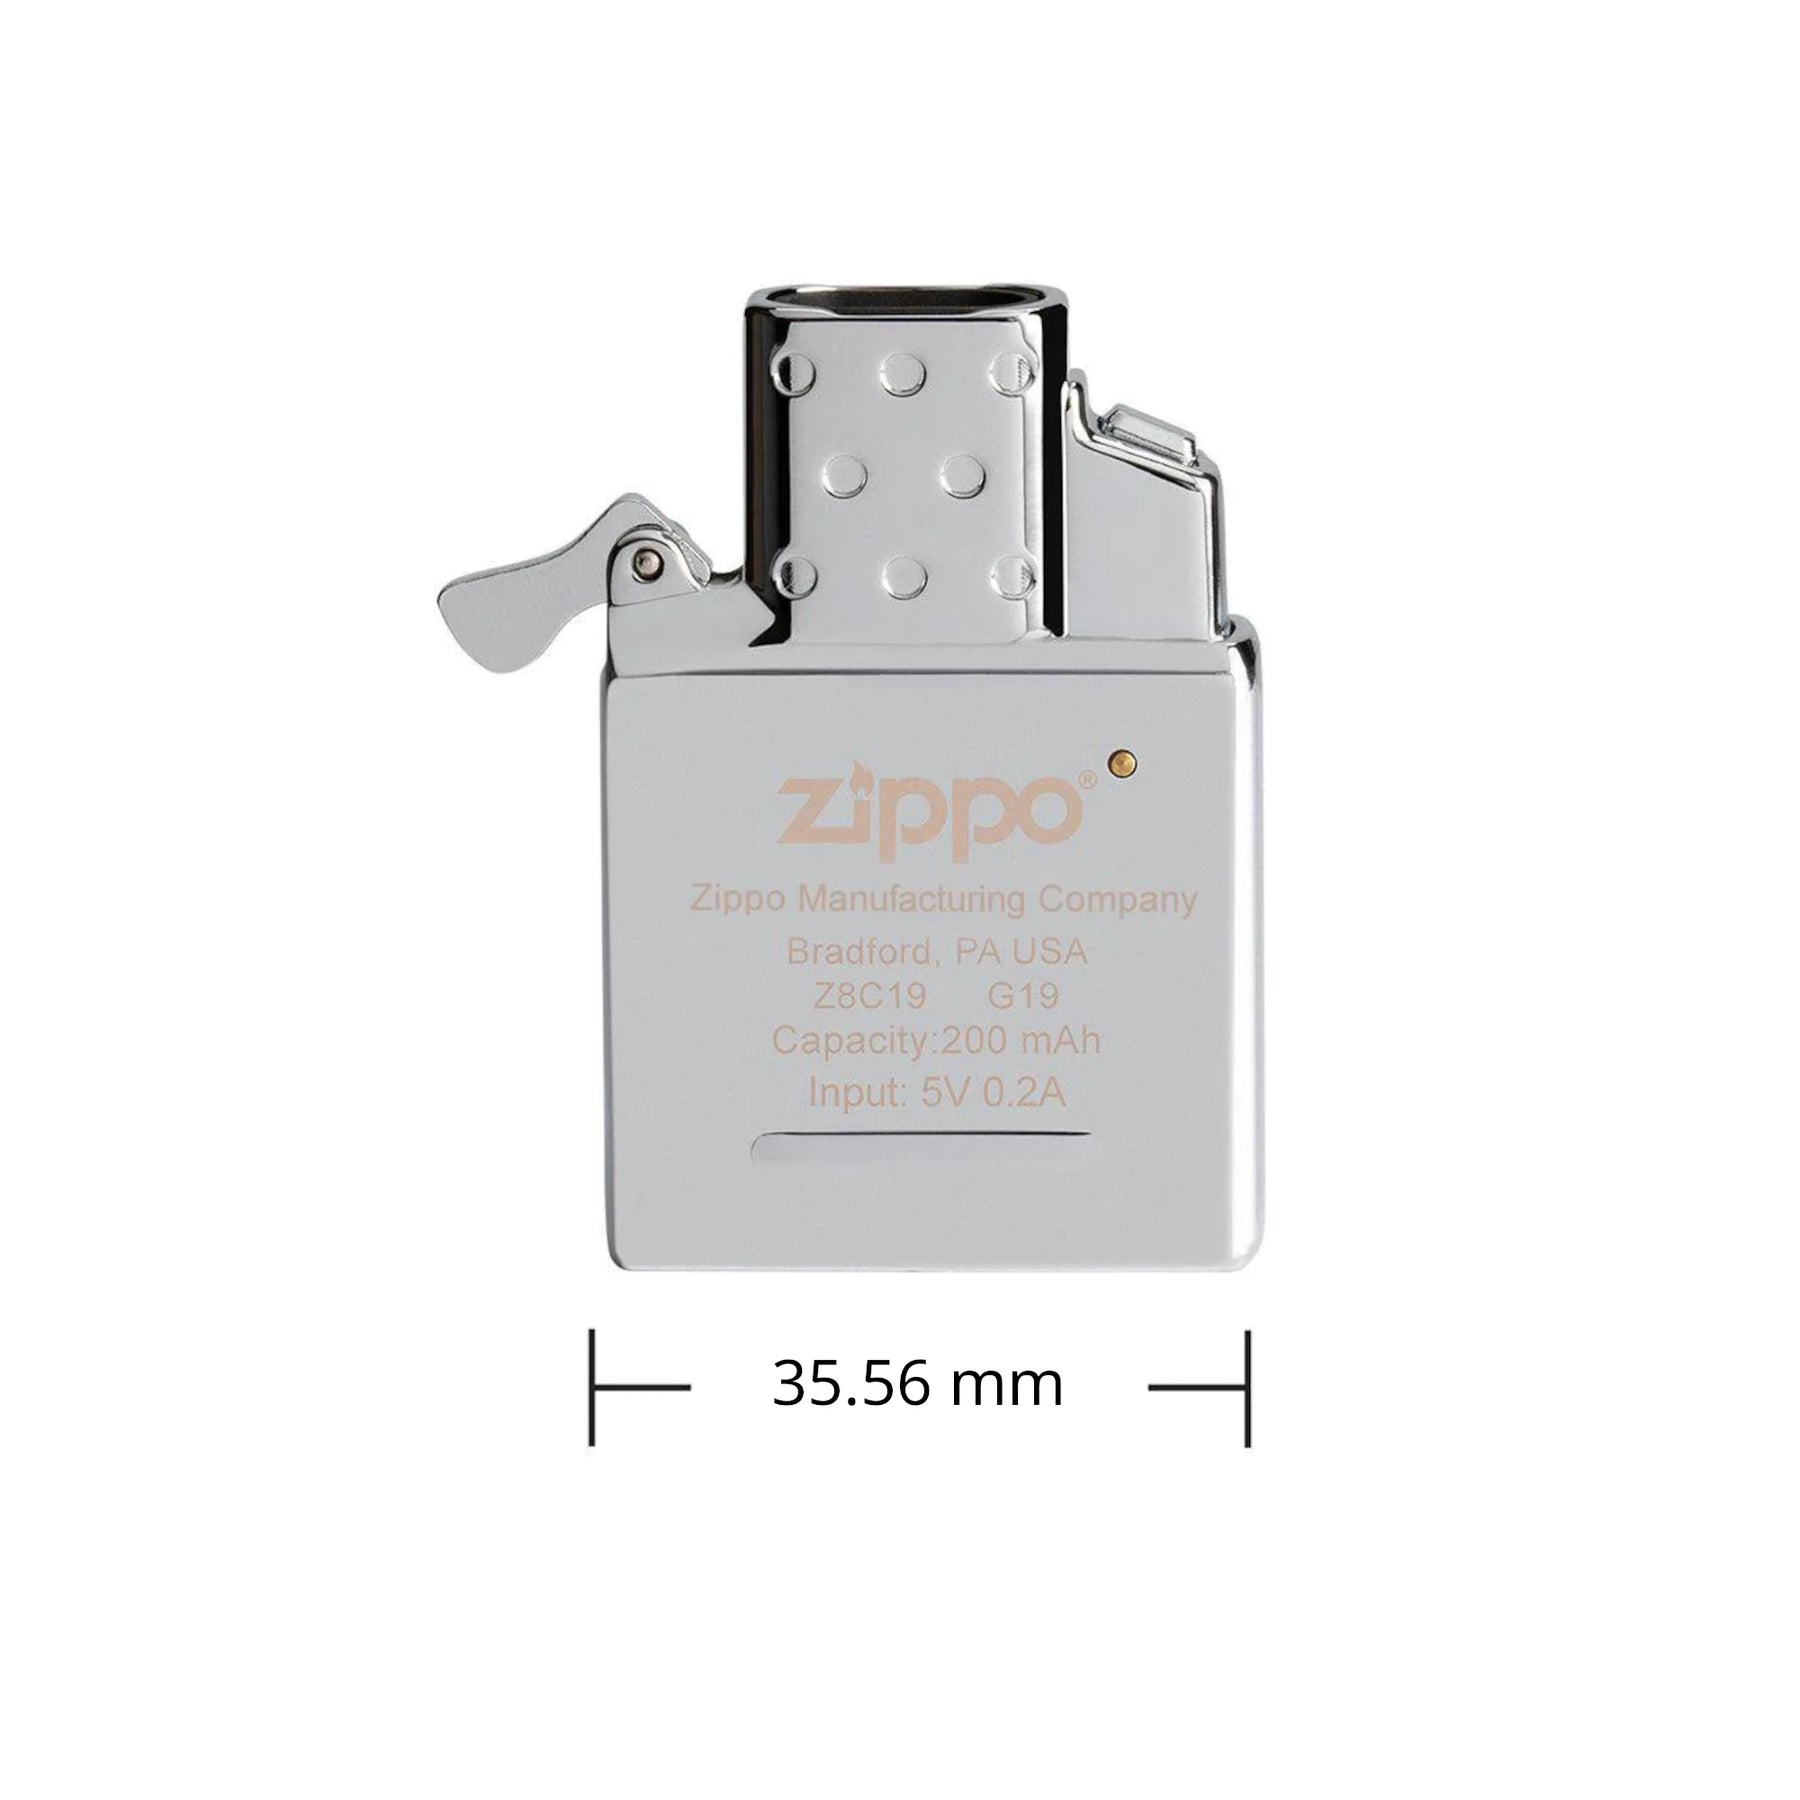 Zippo | Inserto elettrico ad arco voltaico